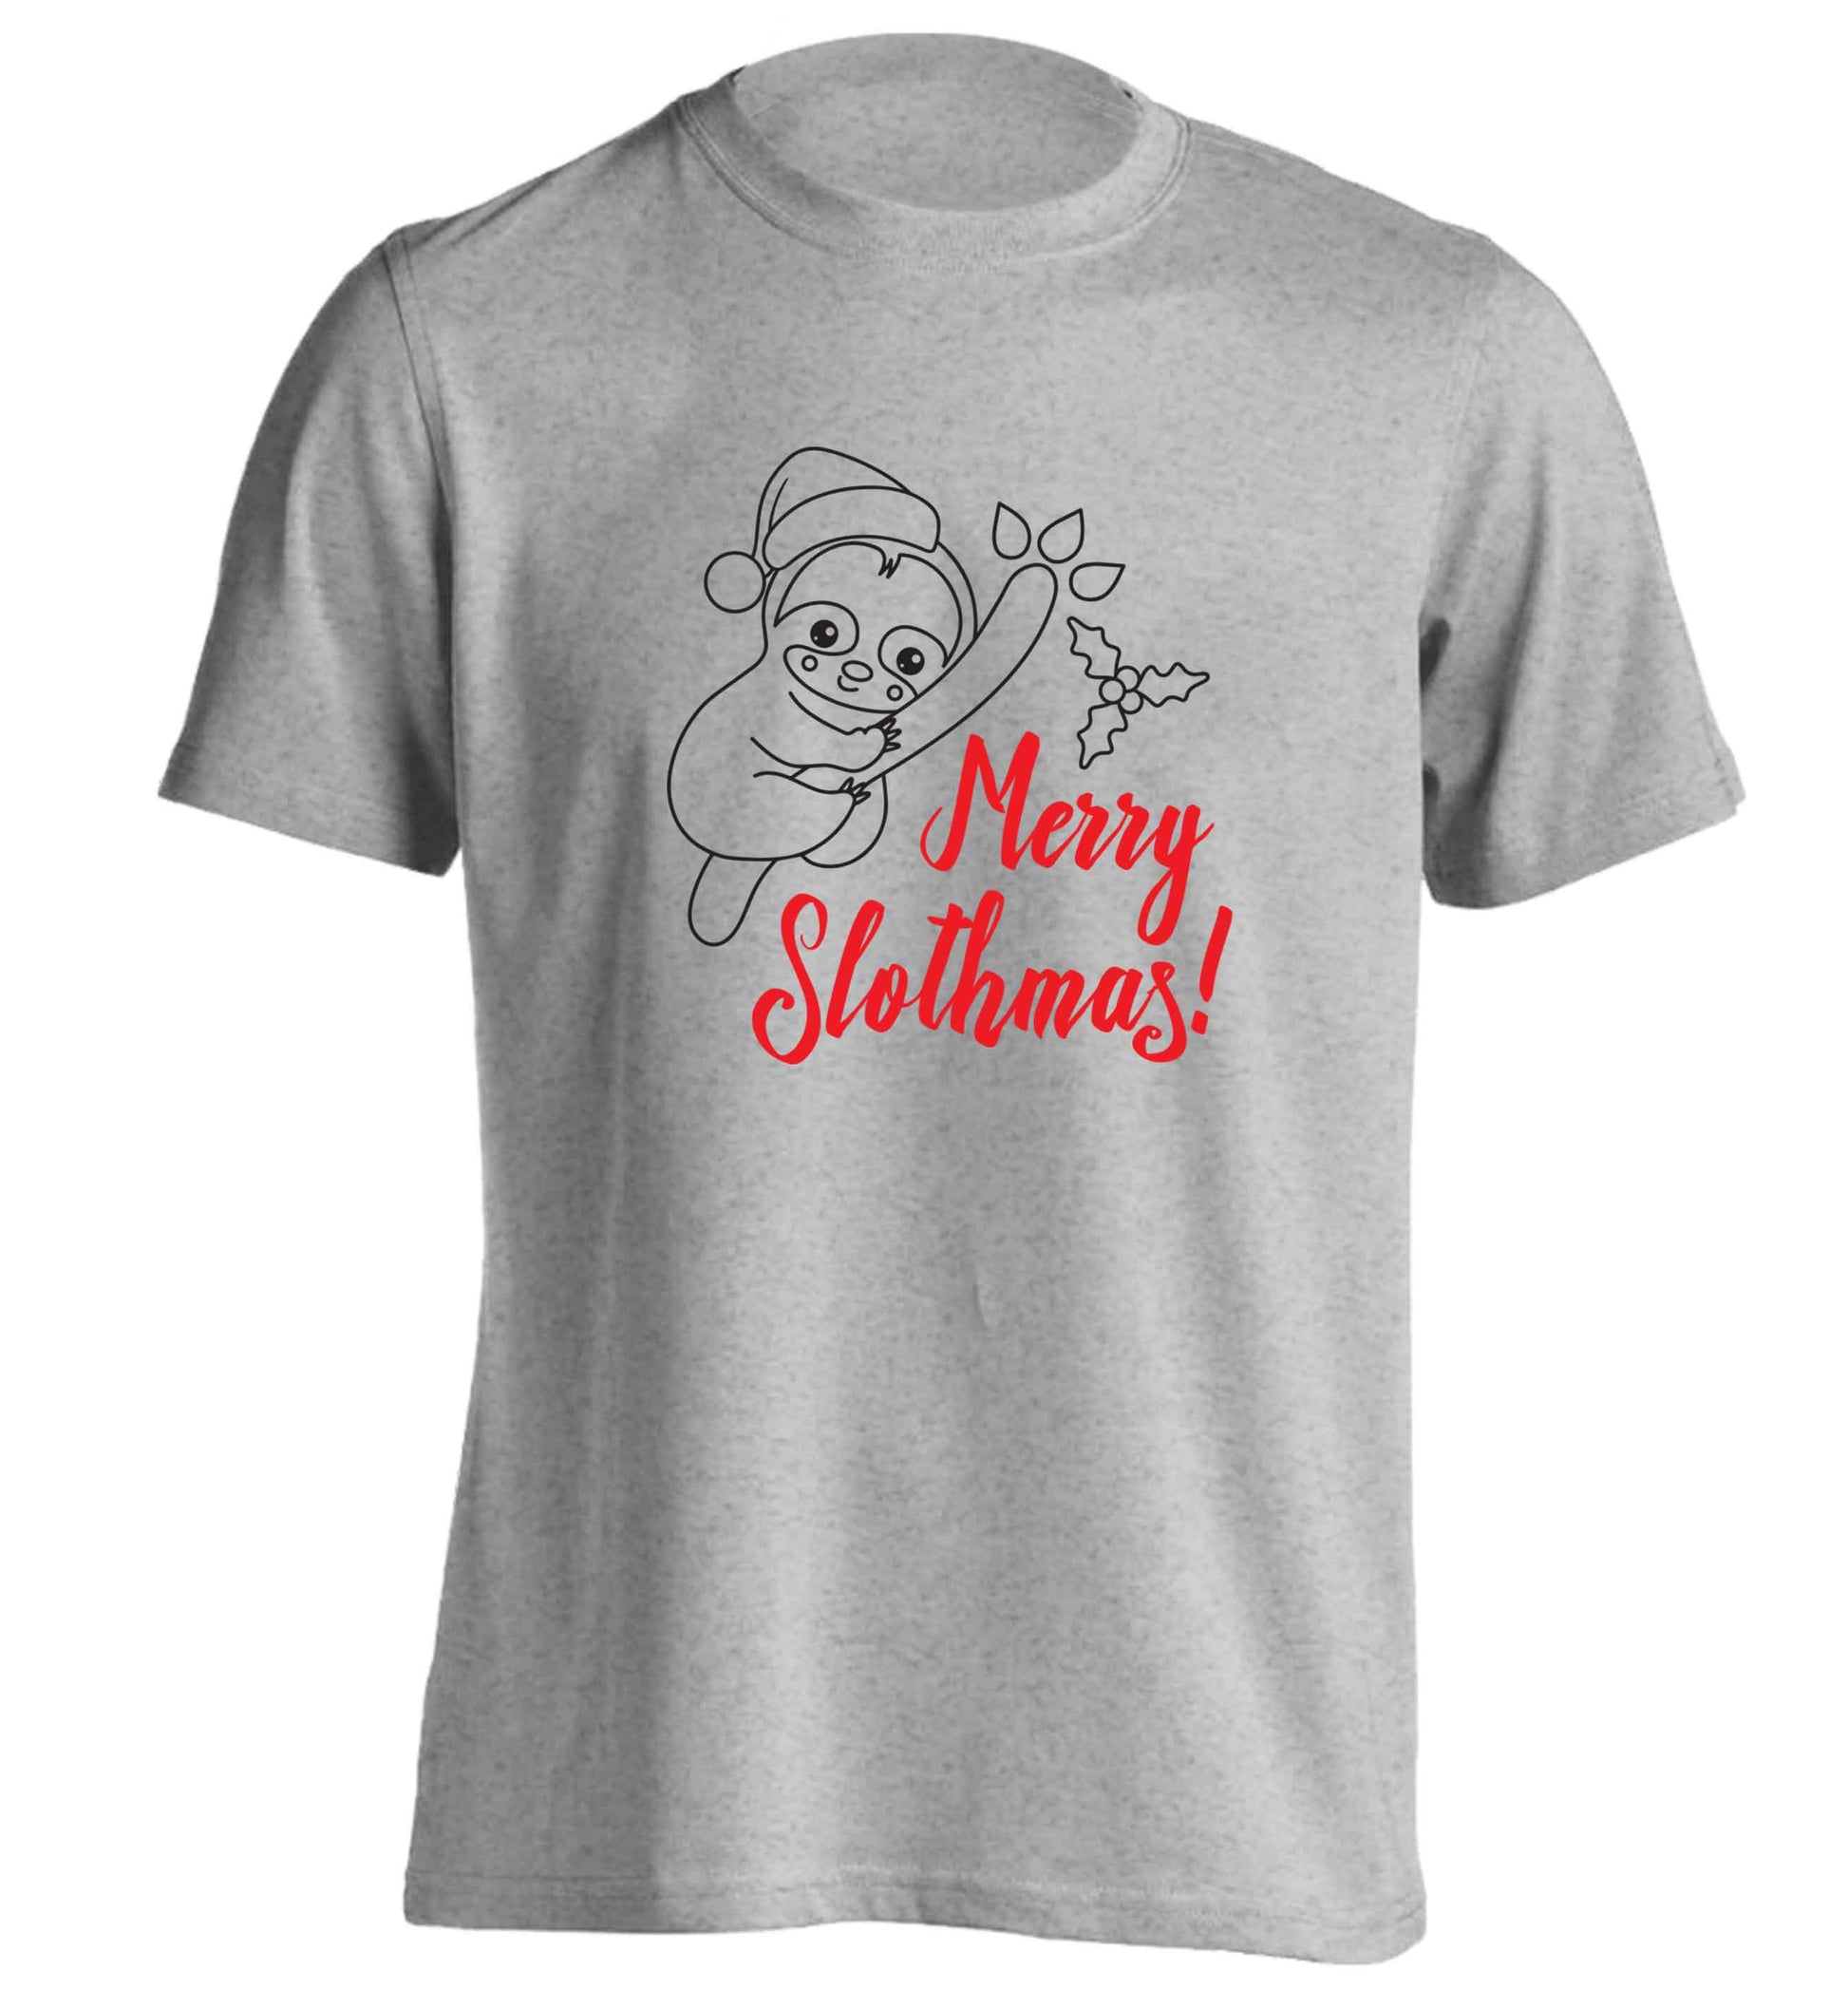 Merry Slothmas adults unisex grey Tshirt 2XL